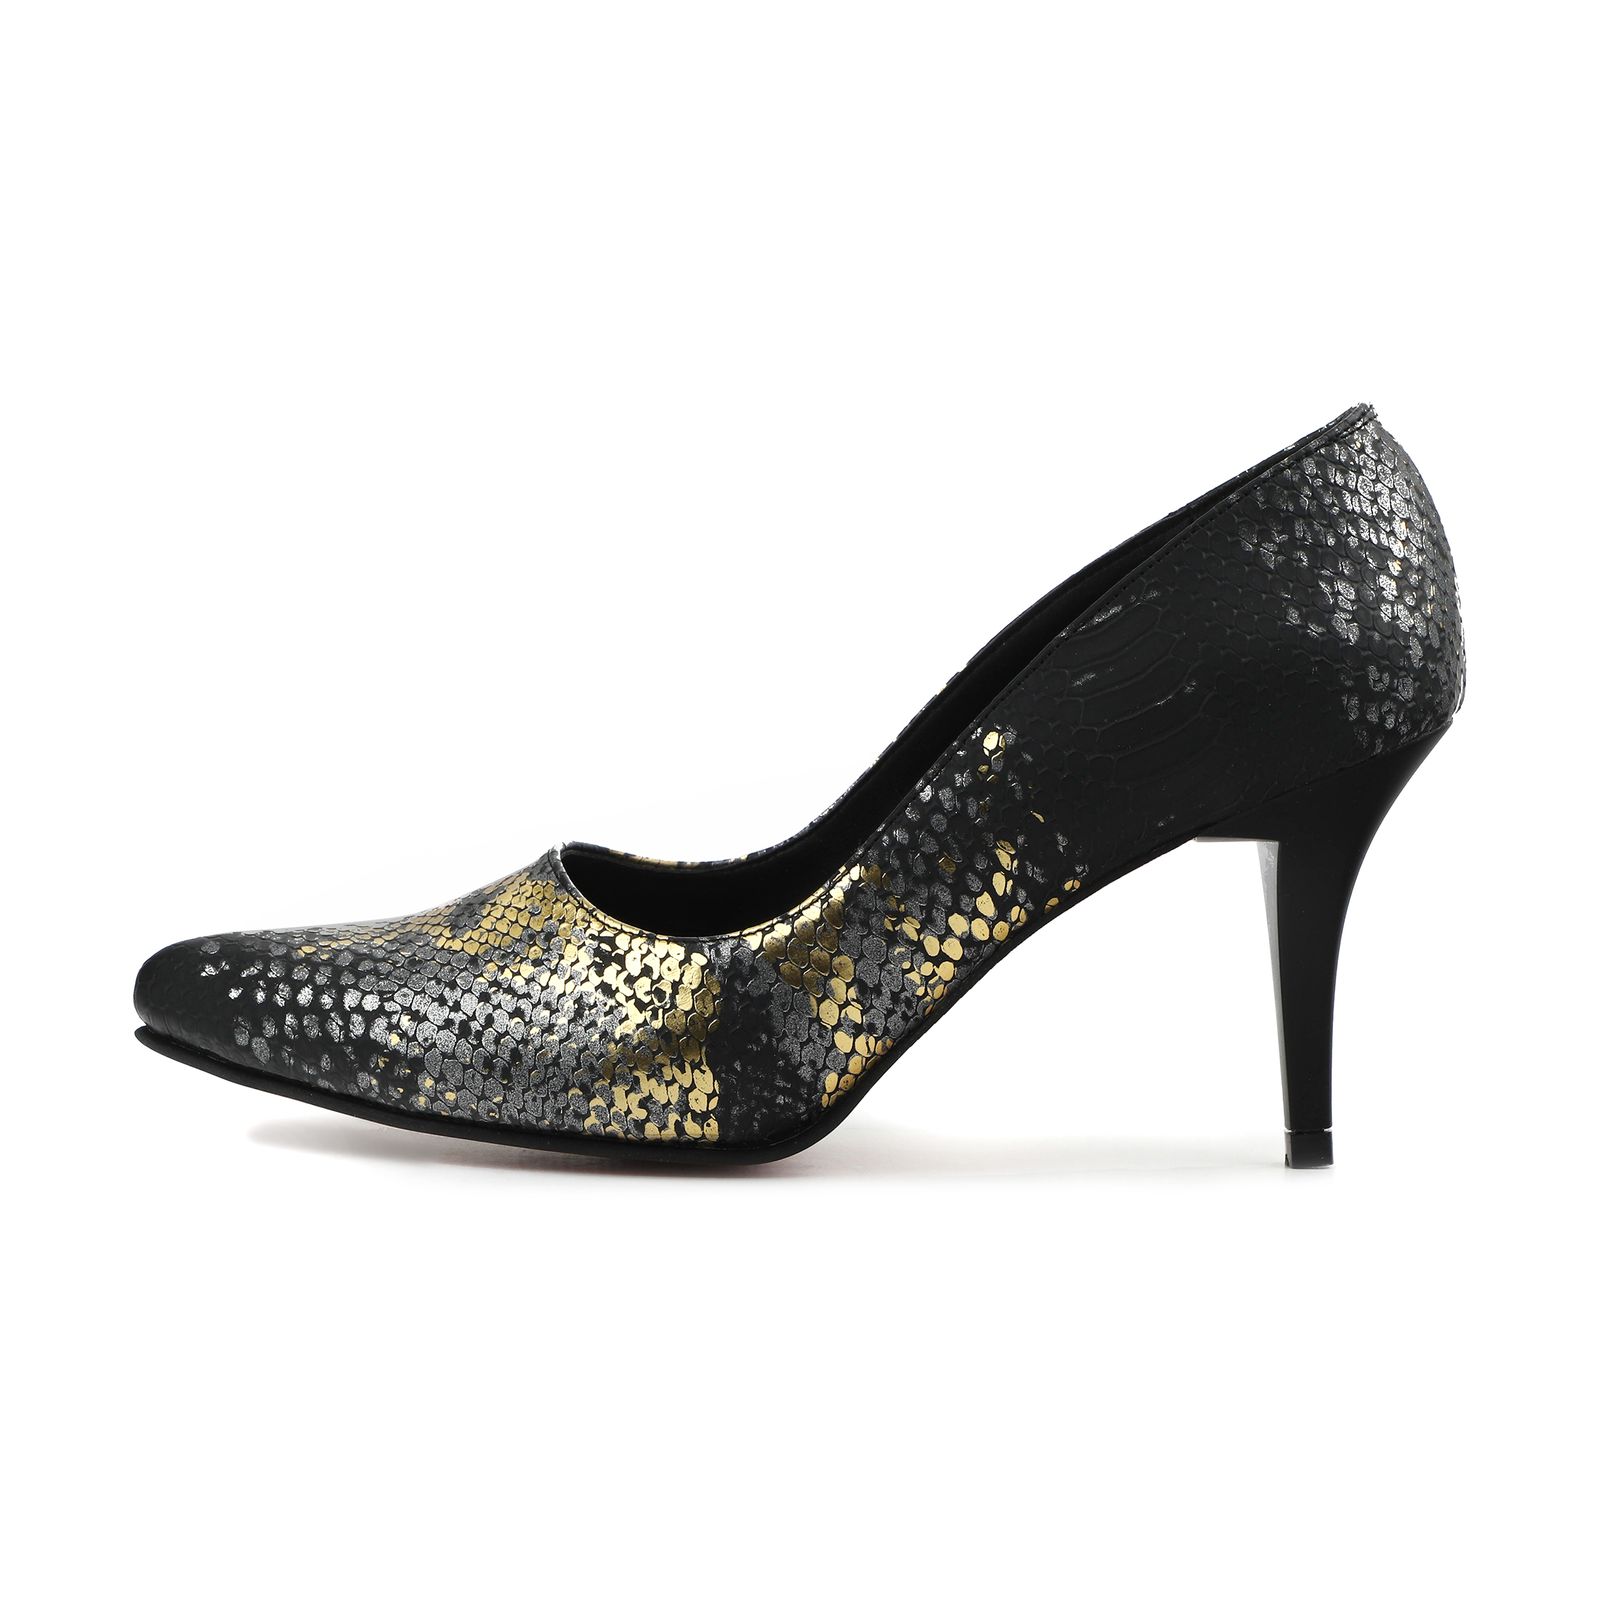 کفش زنانه پاریس هیلتون مدل پوست ماری کد psw20681 رنگ طلایی -  - 1